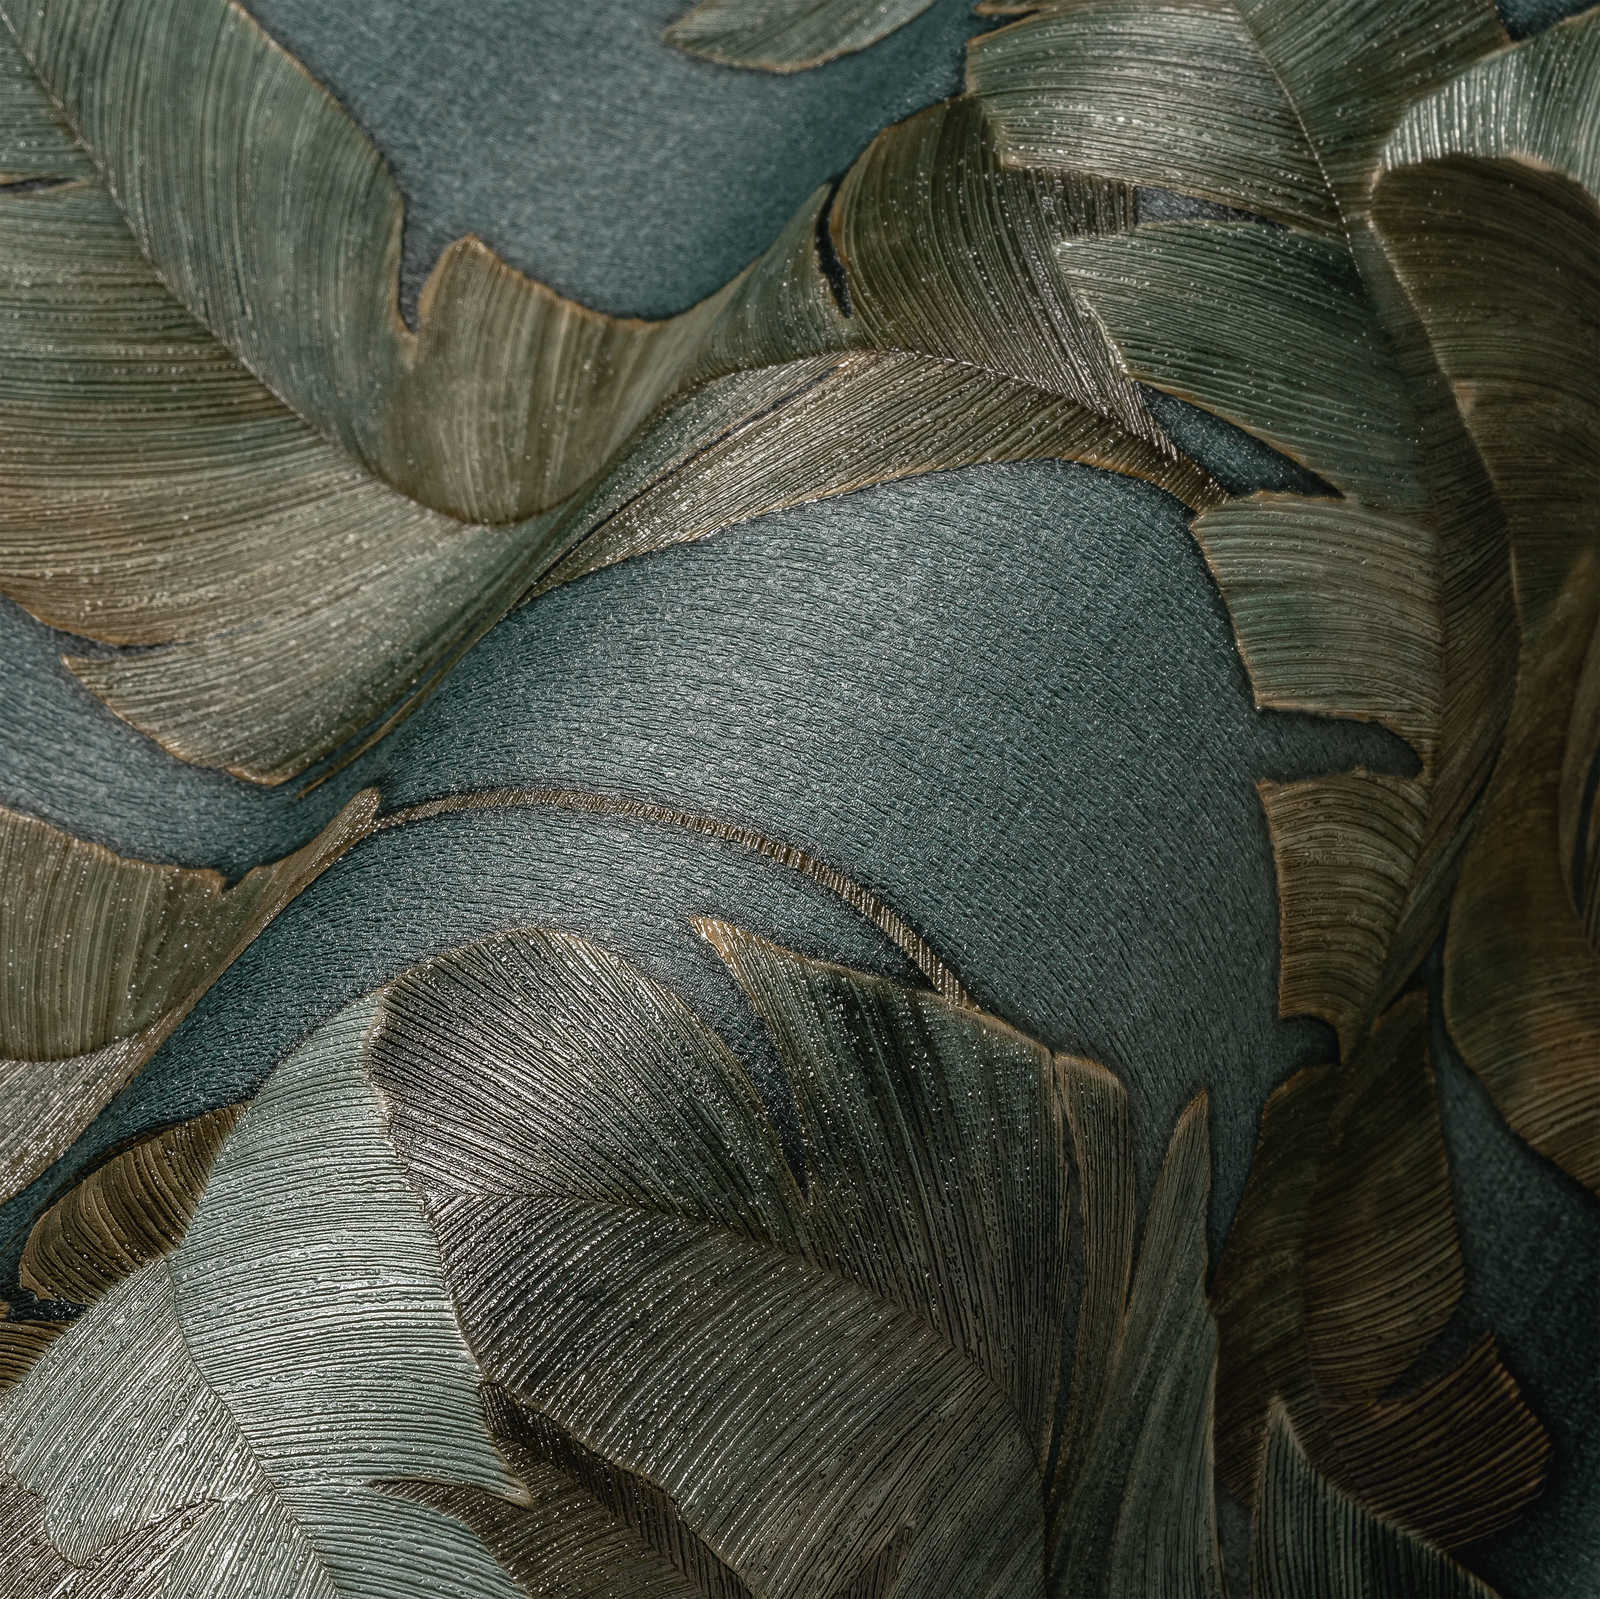             Papier peint intissé avec grandes feuilles de palmier dans une couleur foncée - pétrole, vert, marron
        